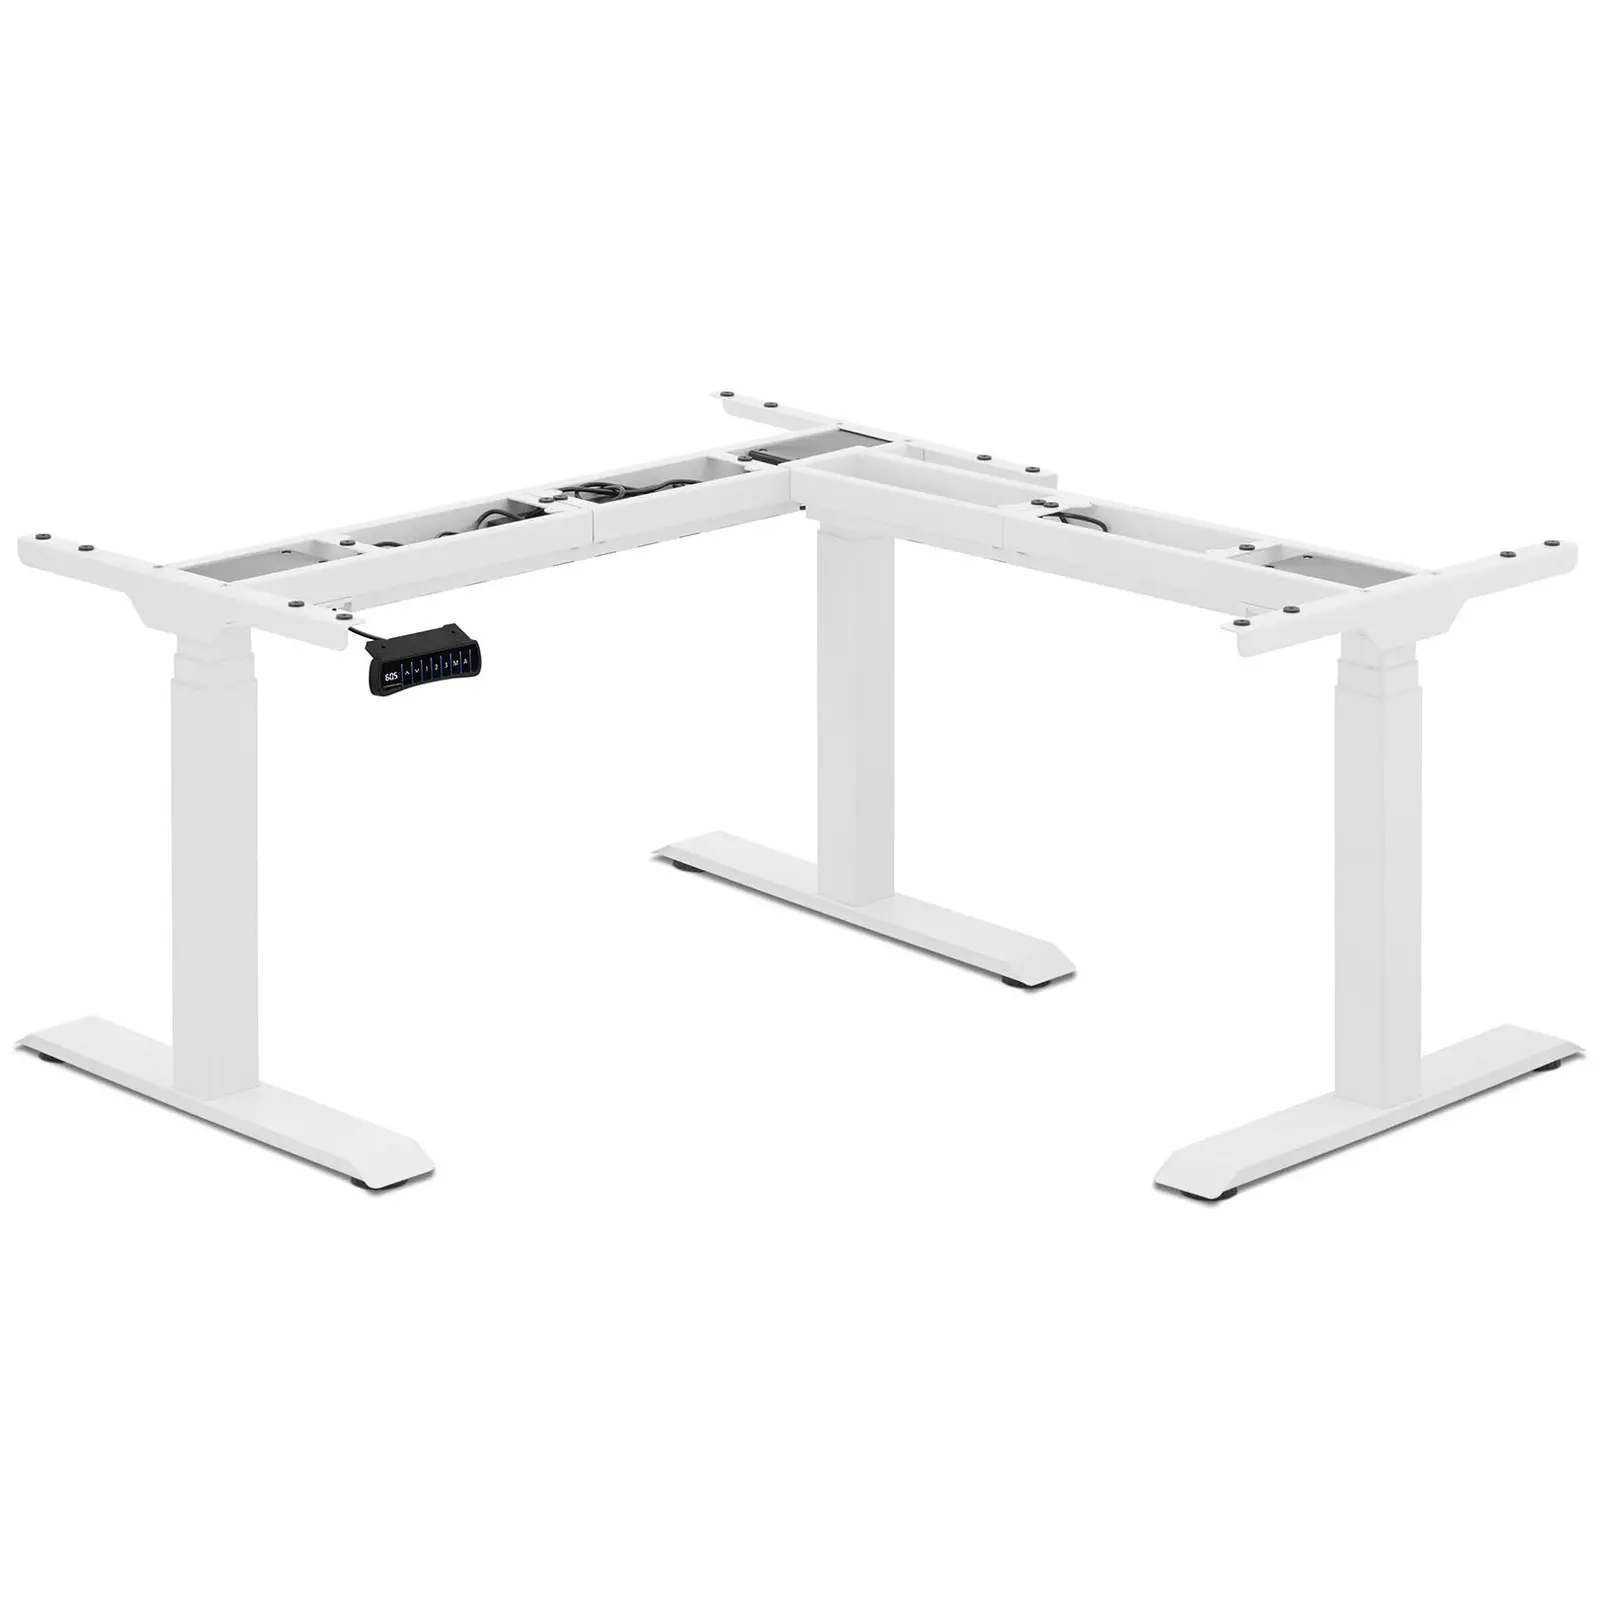 Bastidor para mesa de esquina con ajuste de altura - altura: 58 - 123 cm - ancho: 90 - 150 cm (izquierda) / 110 - 190 cm (derecha)